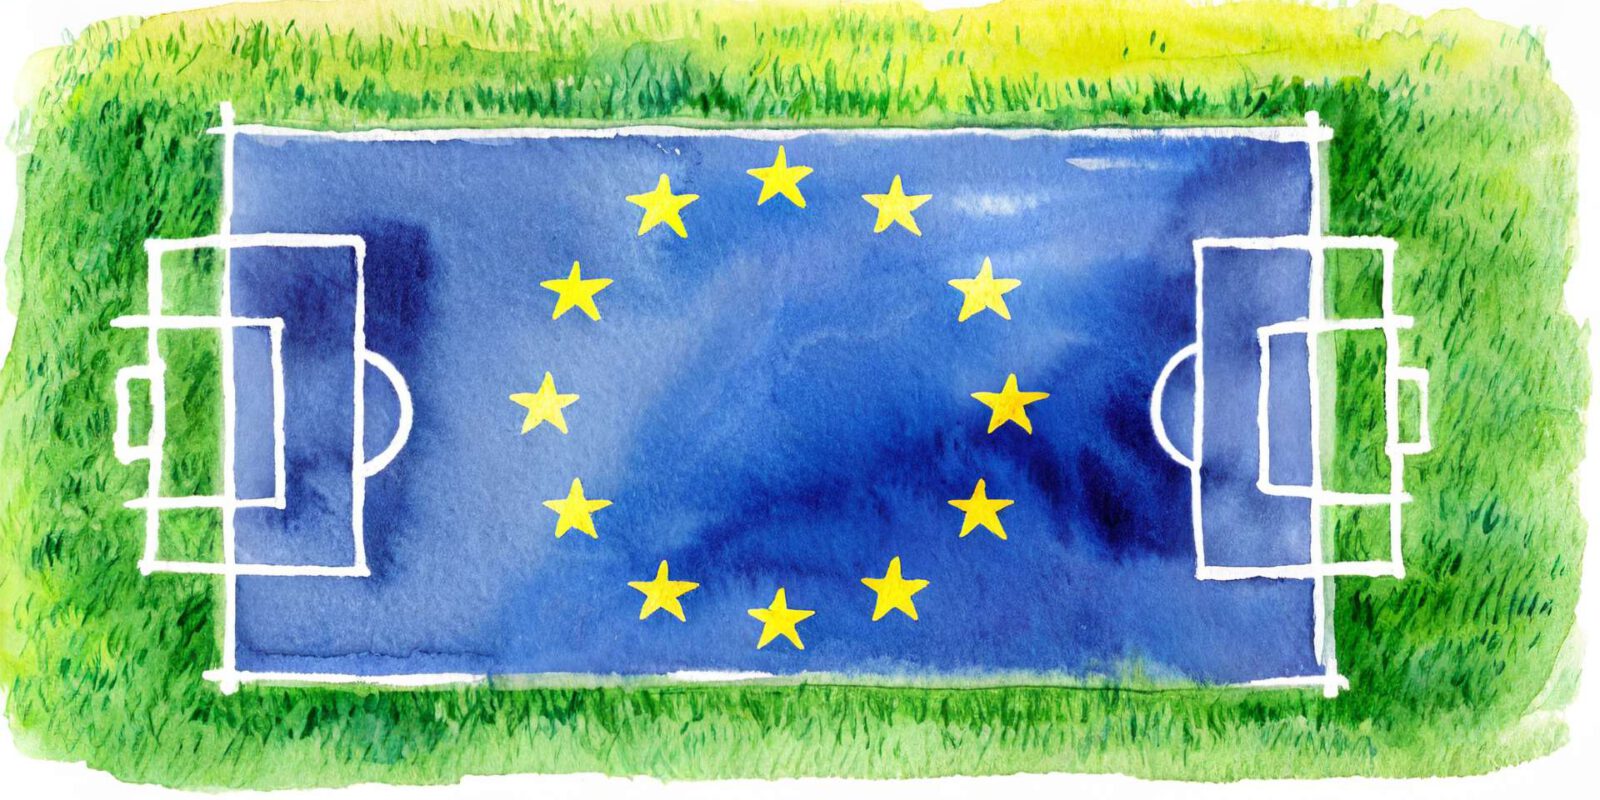 Titelbild: Das wichtigste politische Spielfeld ist die EU